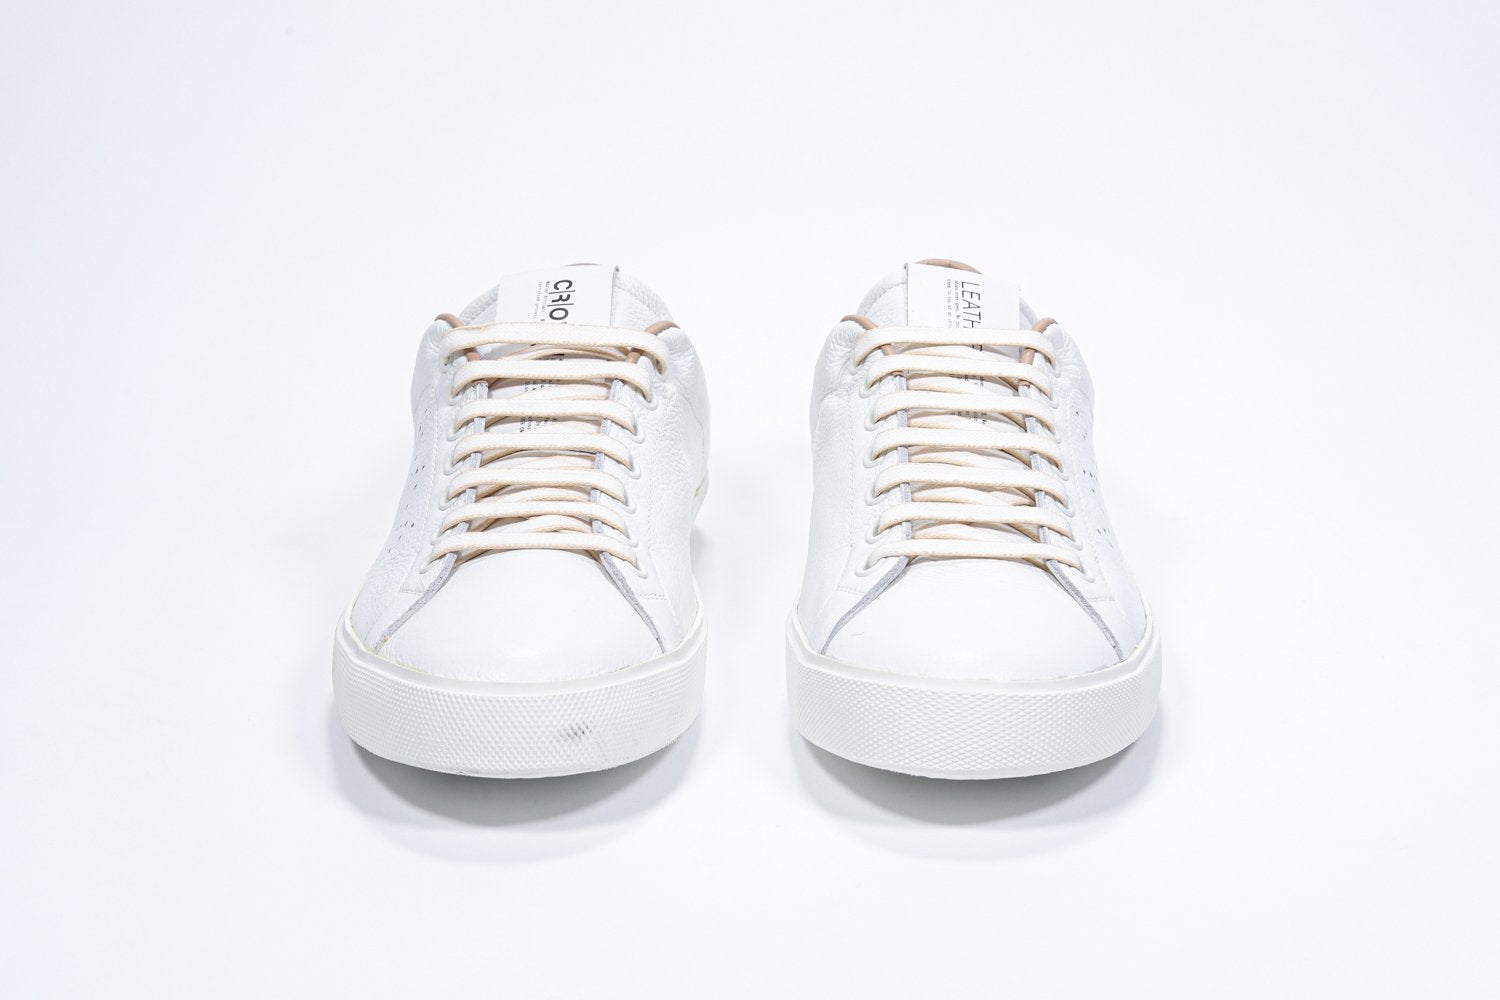 Vorderansicht des weißen Low Top sneaker mit Cuoio-Details und perforiertem Kronenlogo auf dem Obermaterial. Obermaterial aus Vollleder und weiße Gummisohle.